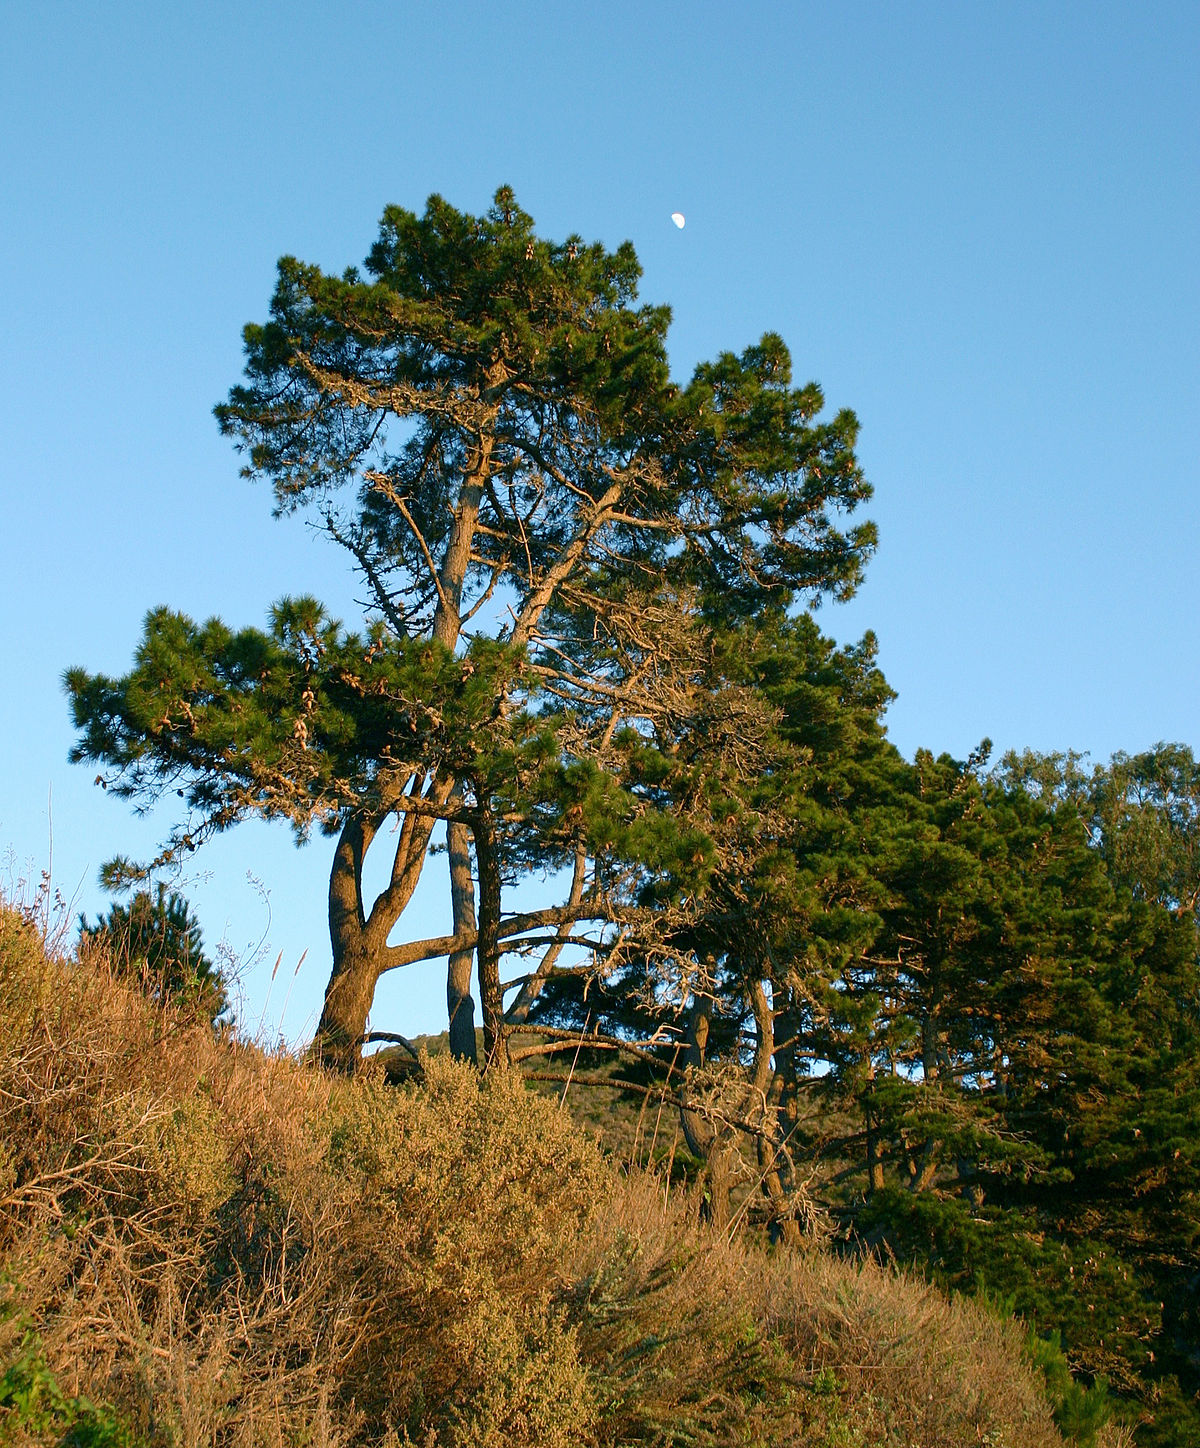 Pinos (Pinus radiata binata)
Islas.